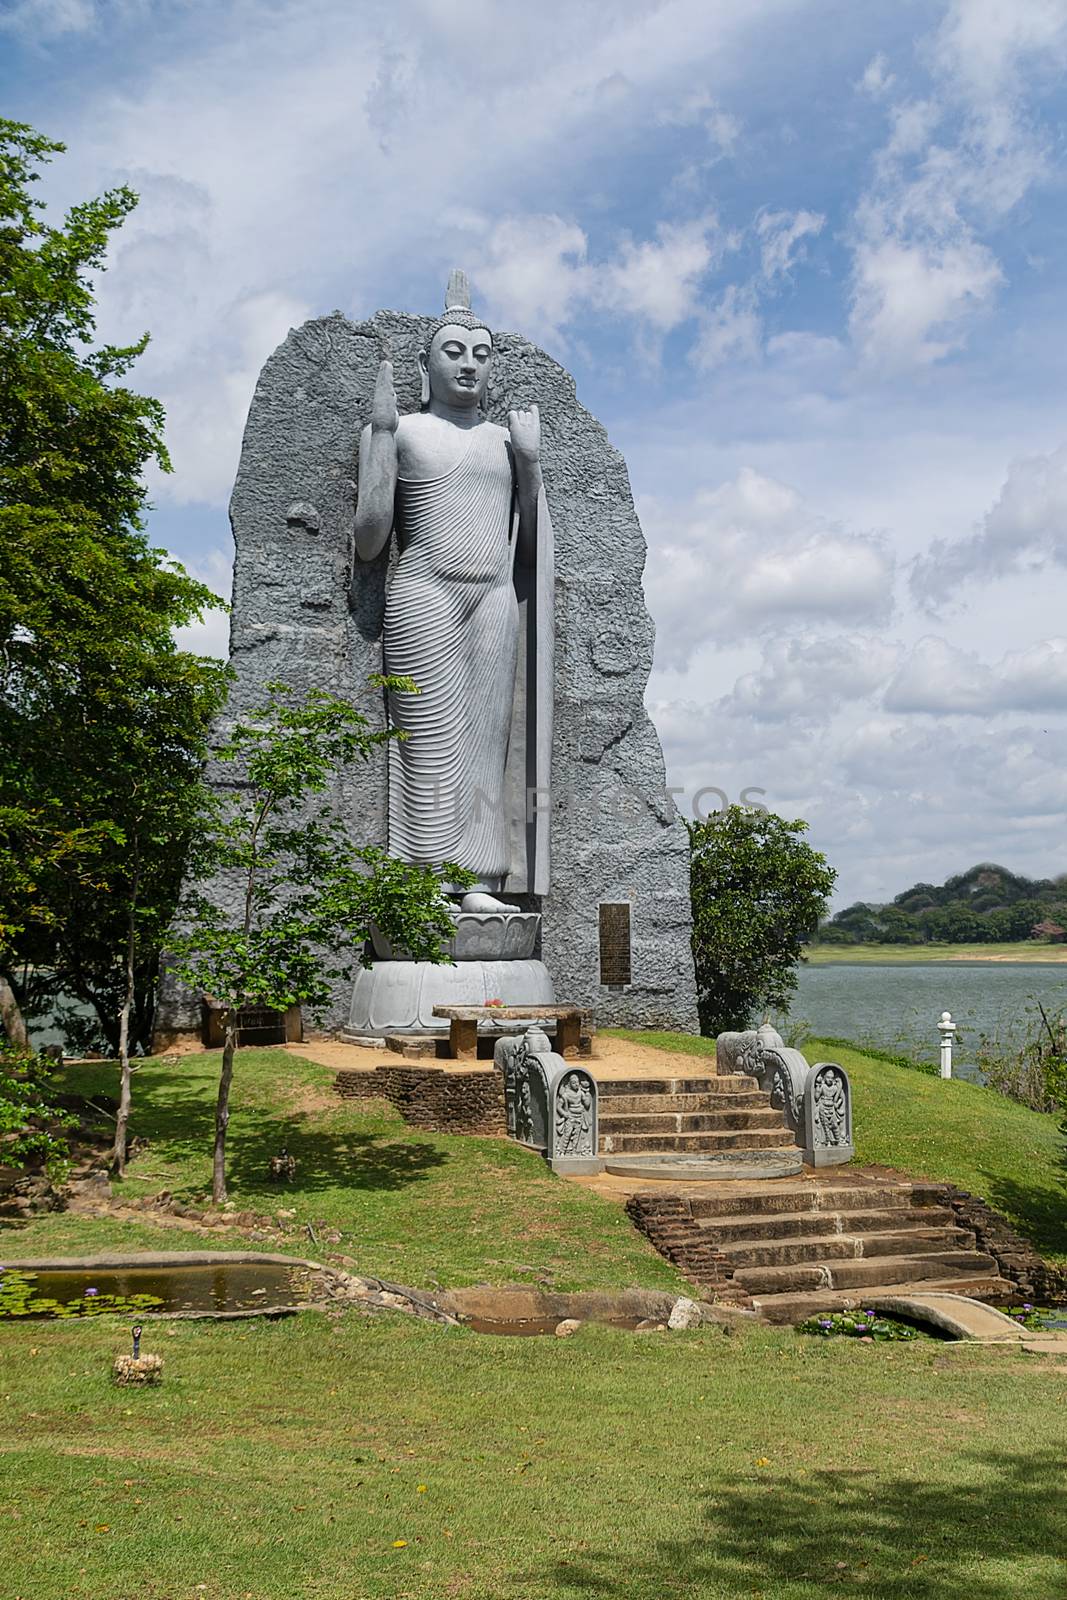 Polonnaruwa, Sri lanka, Sept 2015: Replica of Aukana Buddha statue and Giritale Wewa lake, Giritale near Polonnaruwa